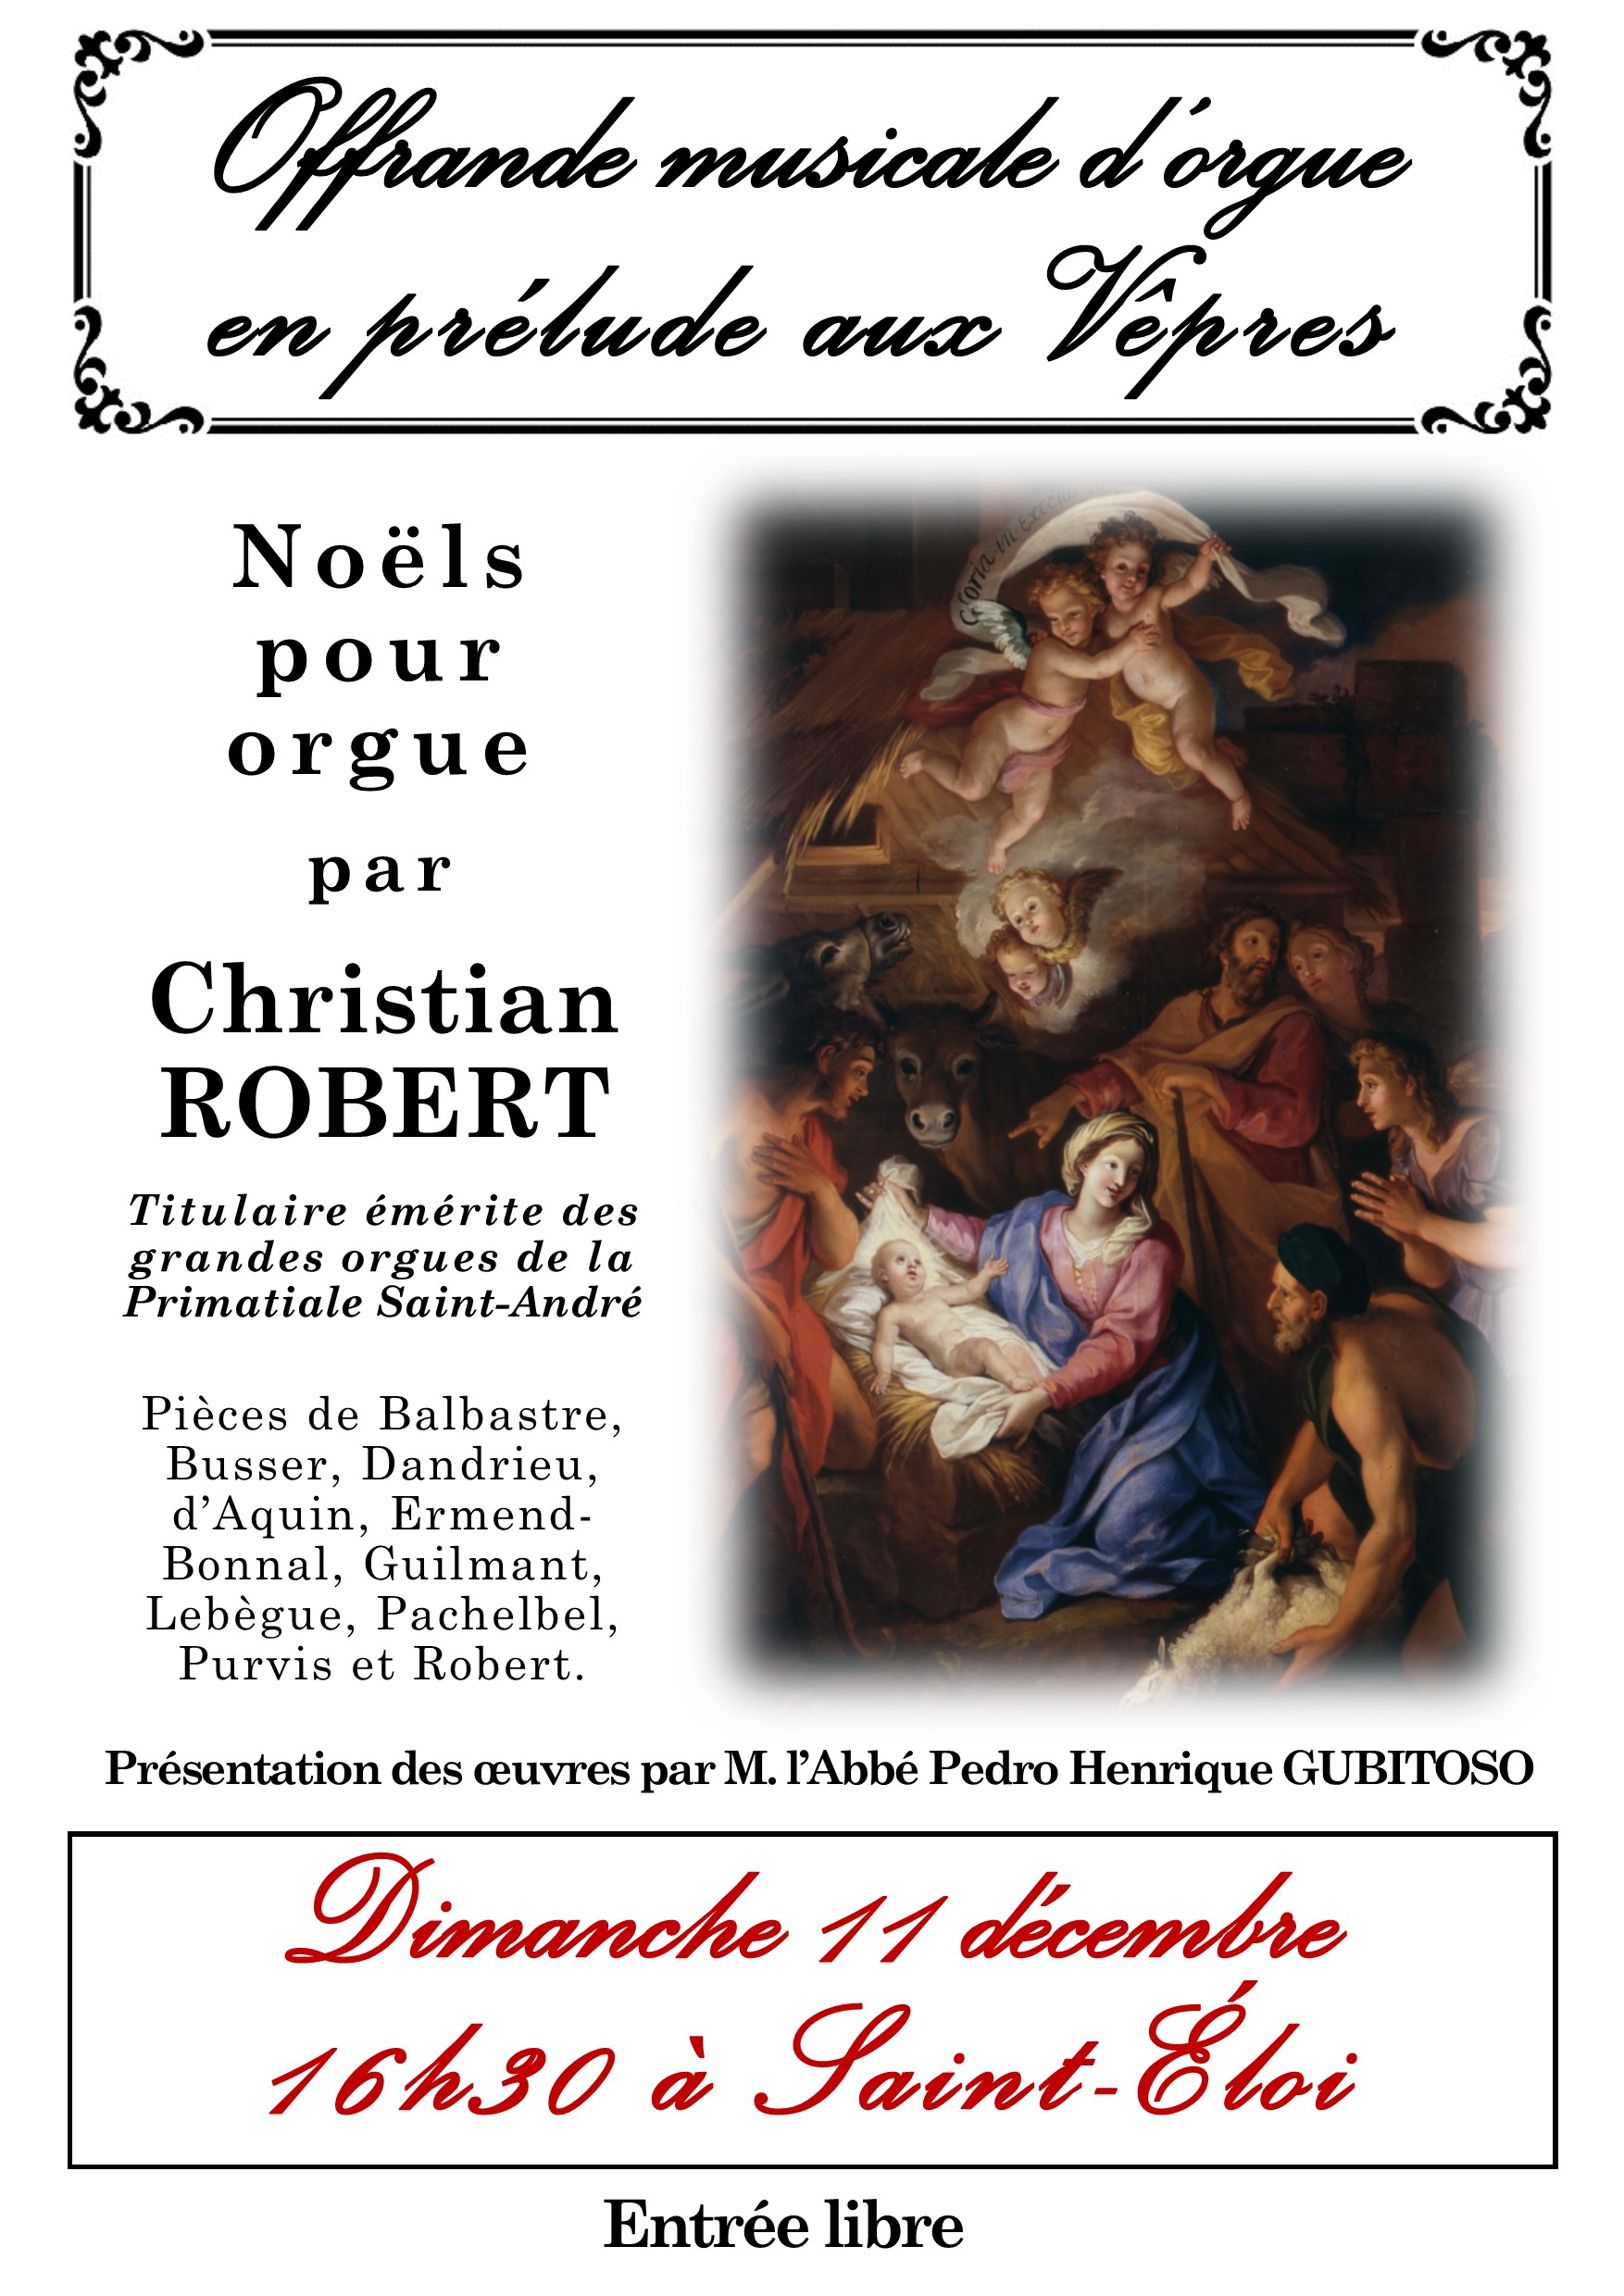 recital-de-noel-christian-robert